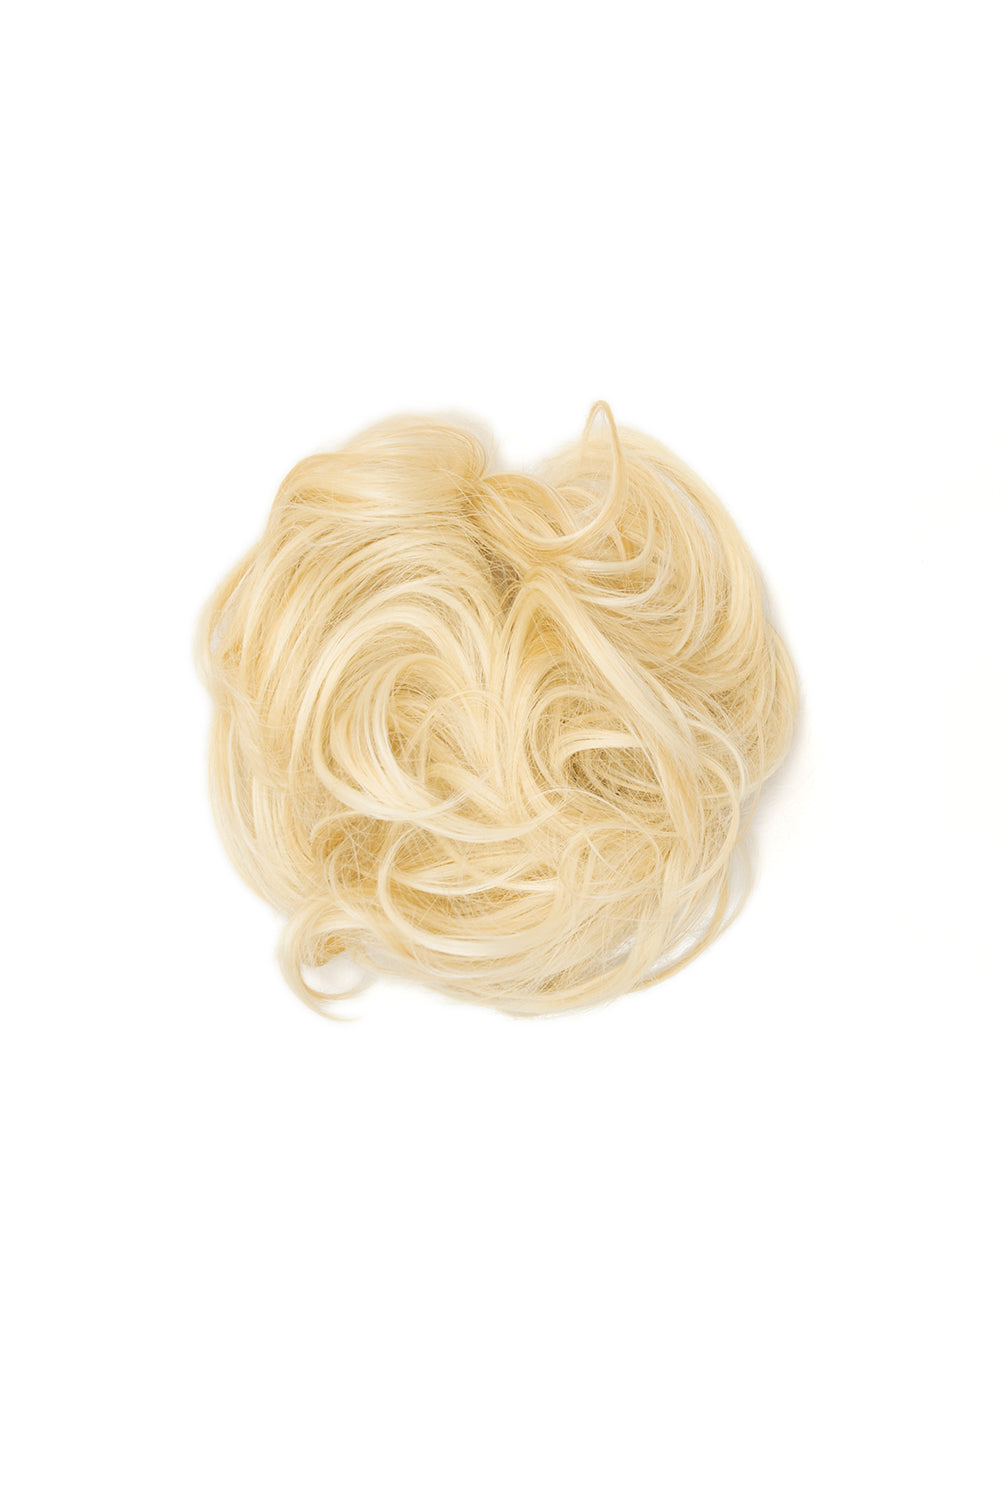 Premium Messy Bun Hair Up Scrunchie - LullaBellz  - Pure Blonde